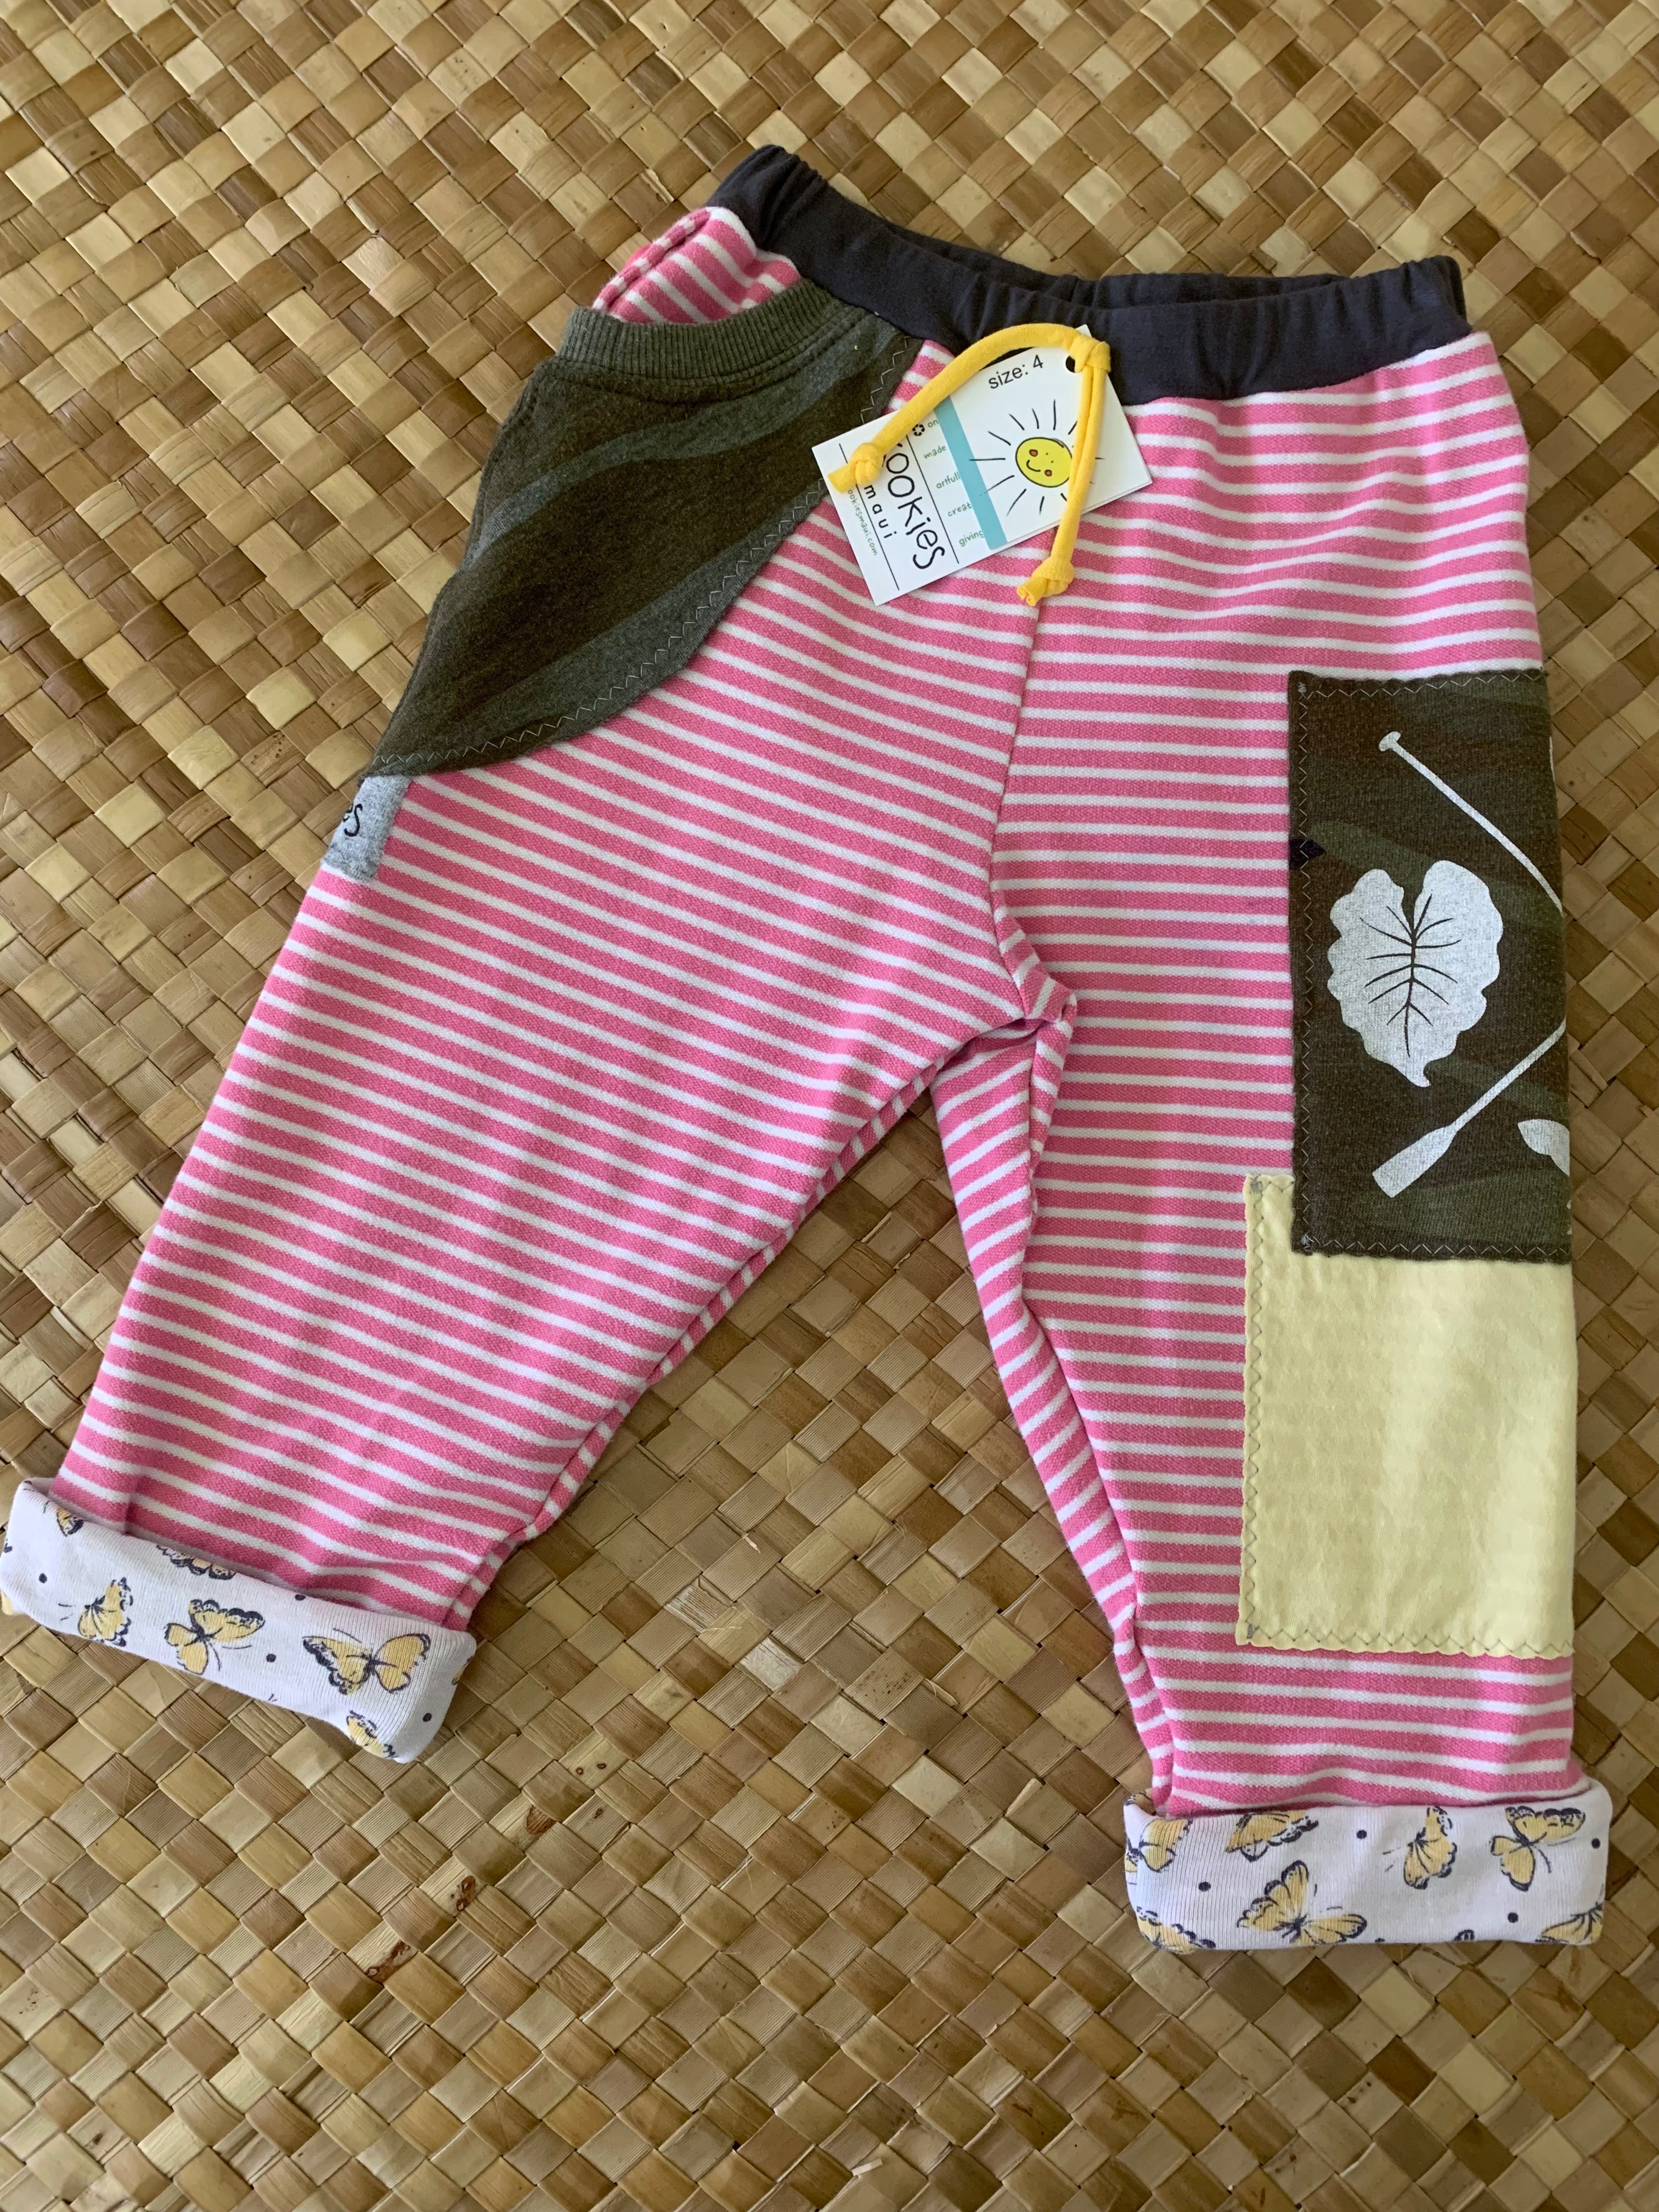 Kids Size 4 "Pink & Camo Hawaii Farmer and Rancher" Star Gazer Pants